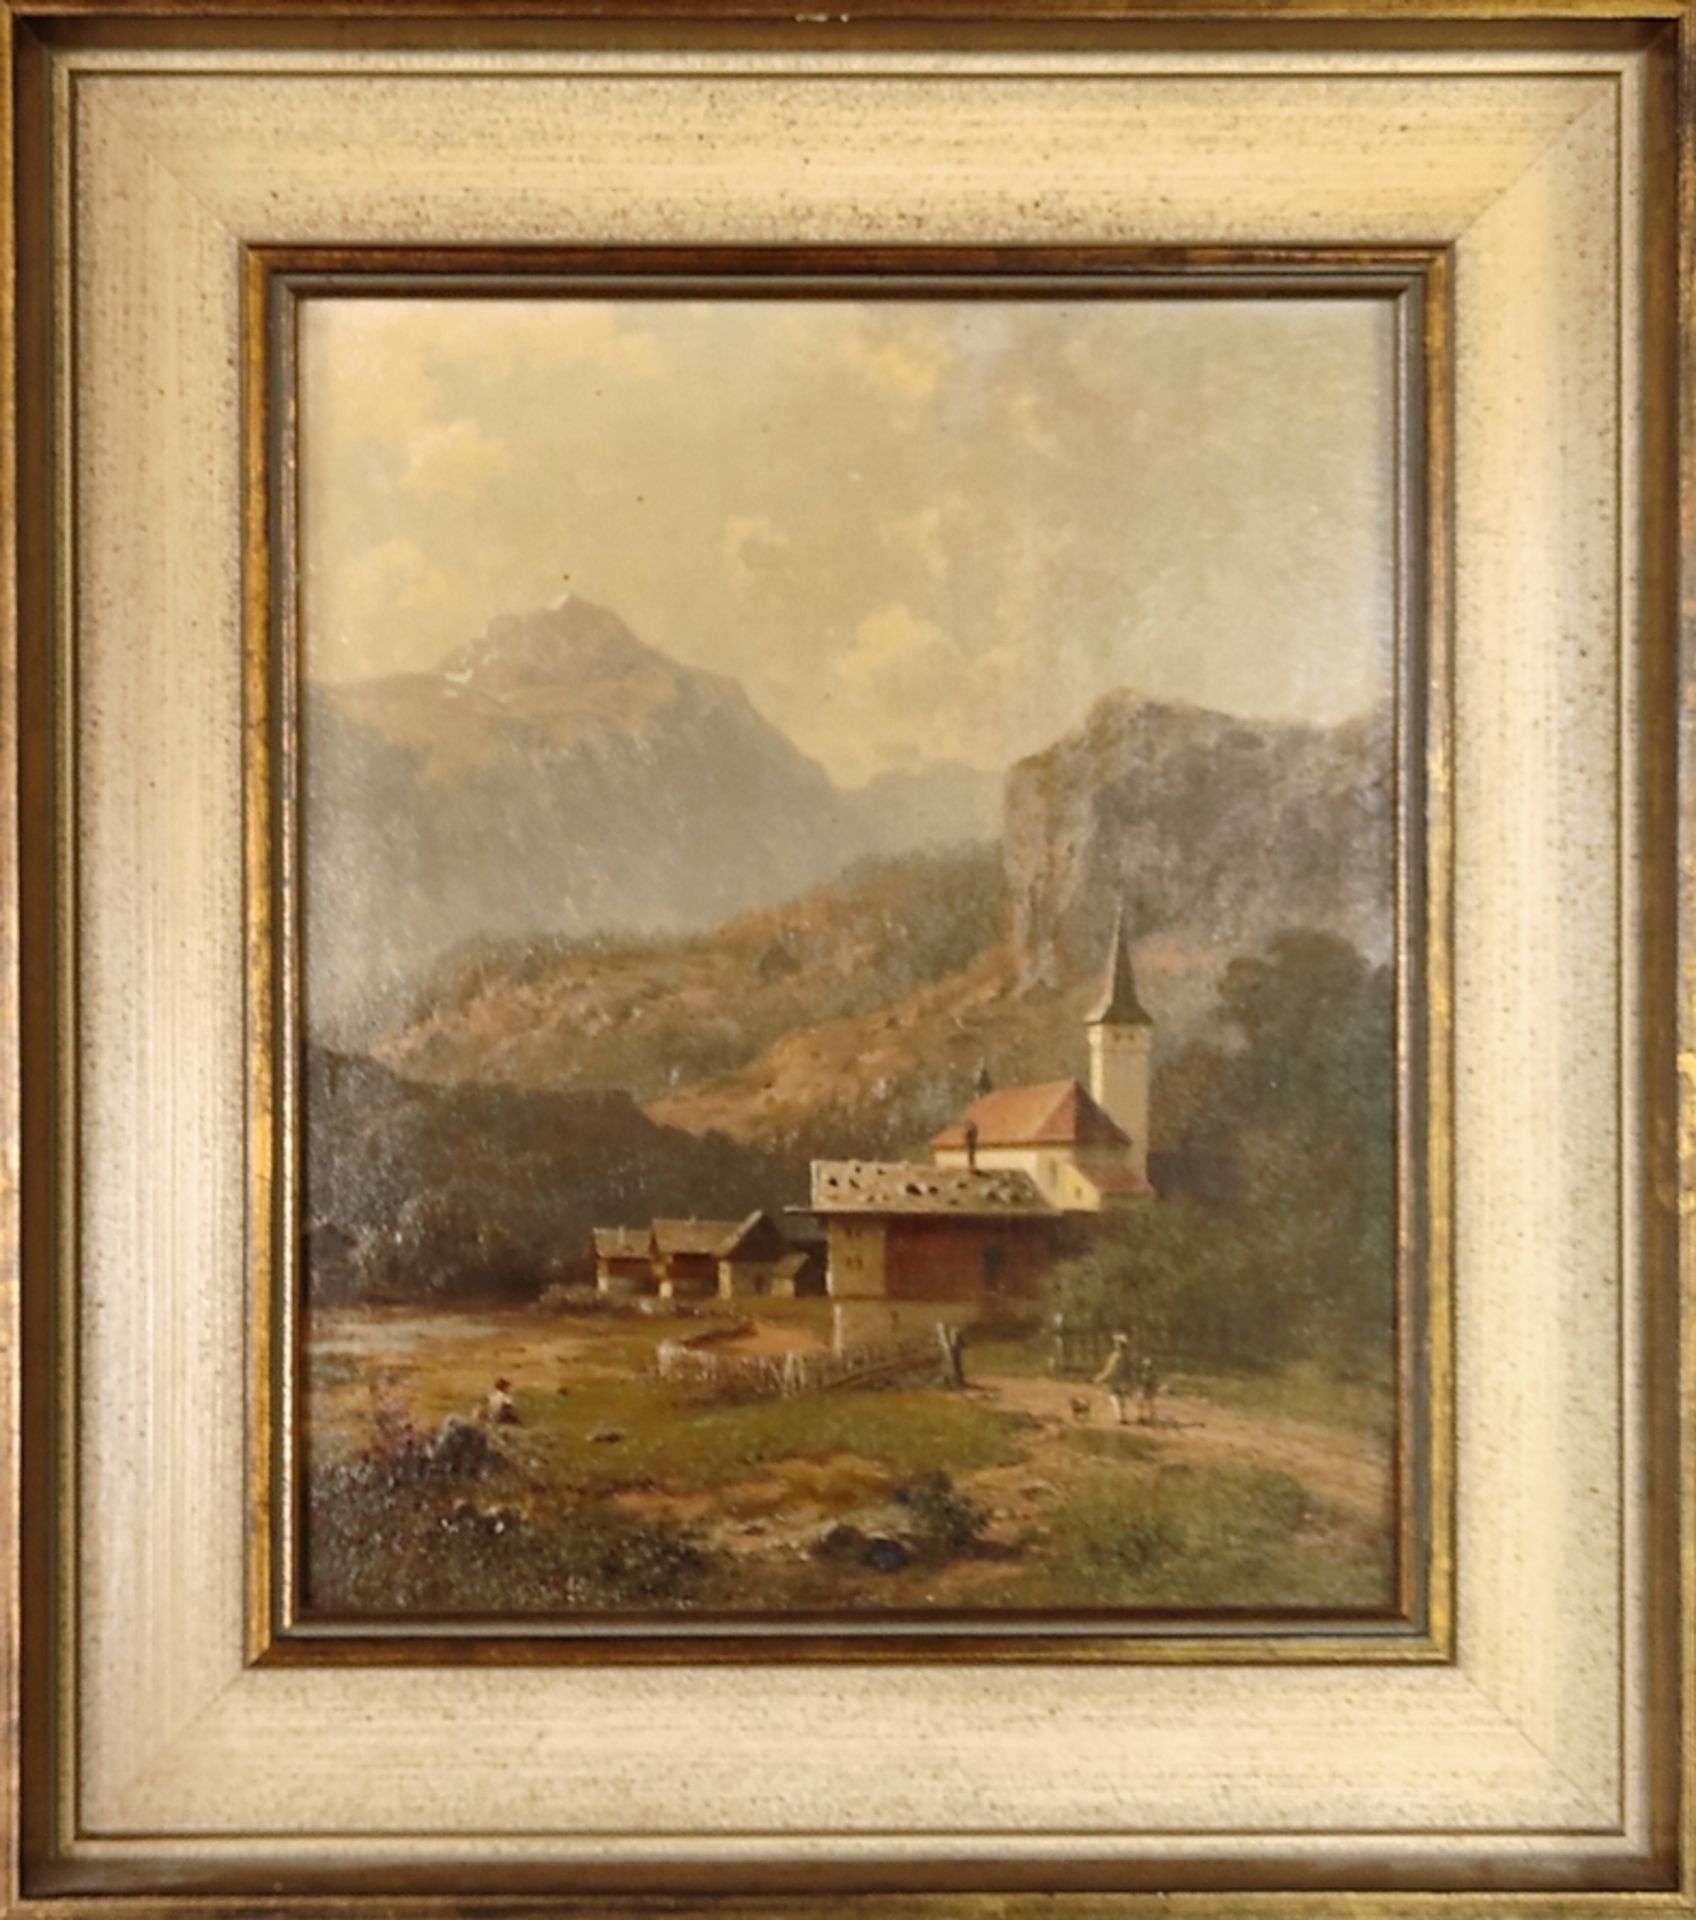 Meermann, Arnold (1829 Rehden - 1908 Nieder Thalheim bei Bad Landeck) "Village church" with view of - Image 2 of 4